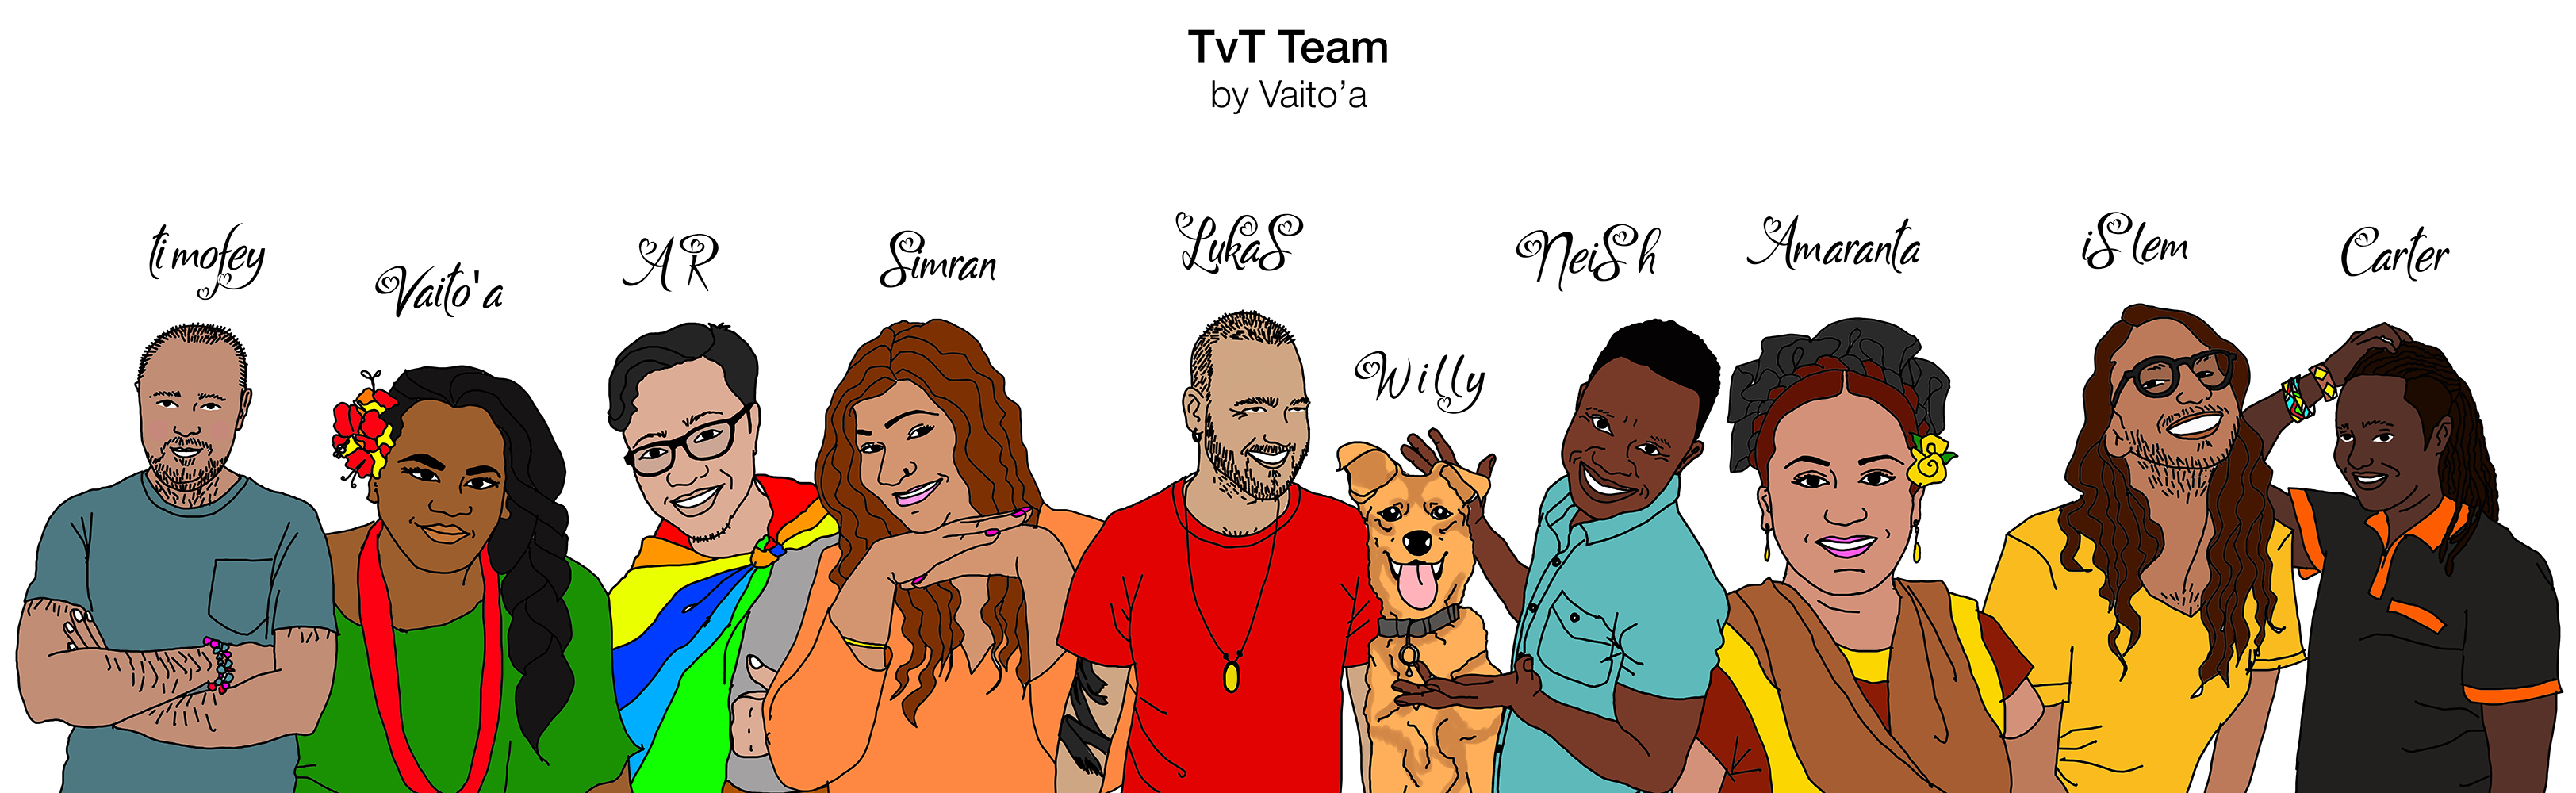 TvT Team Illustrations by Vaito'a